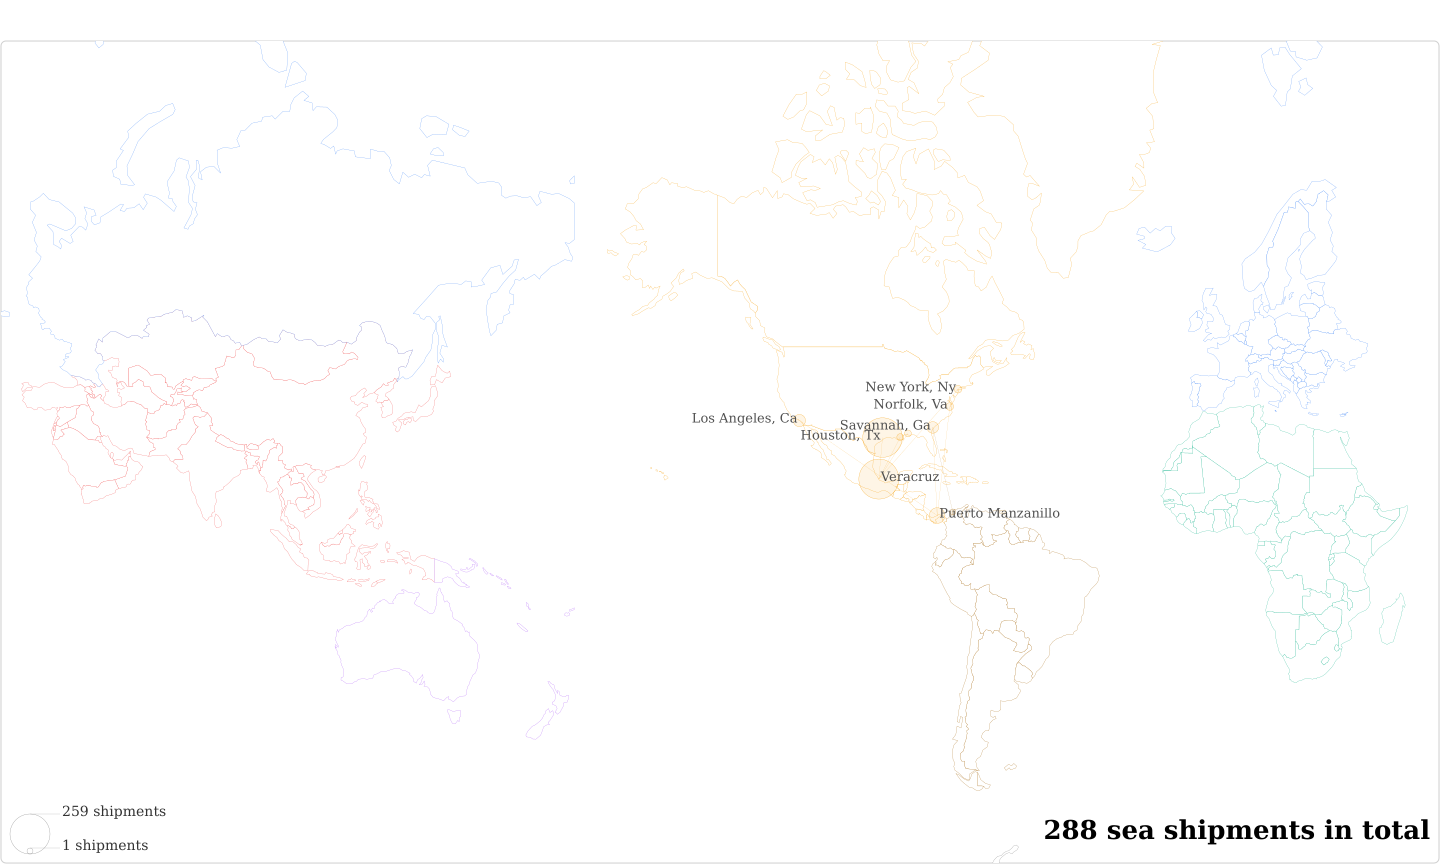 Cafe Tostado De Exportacion S A De C V's Imports Per Country Map